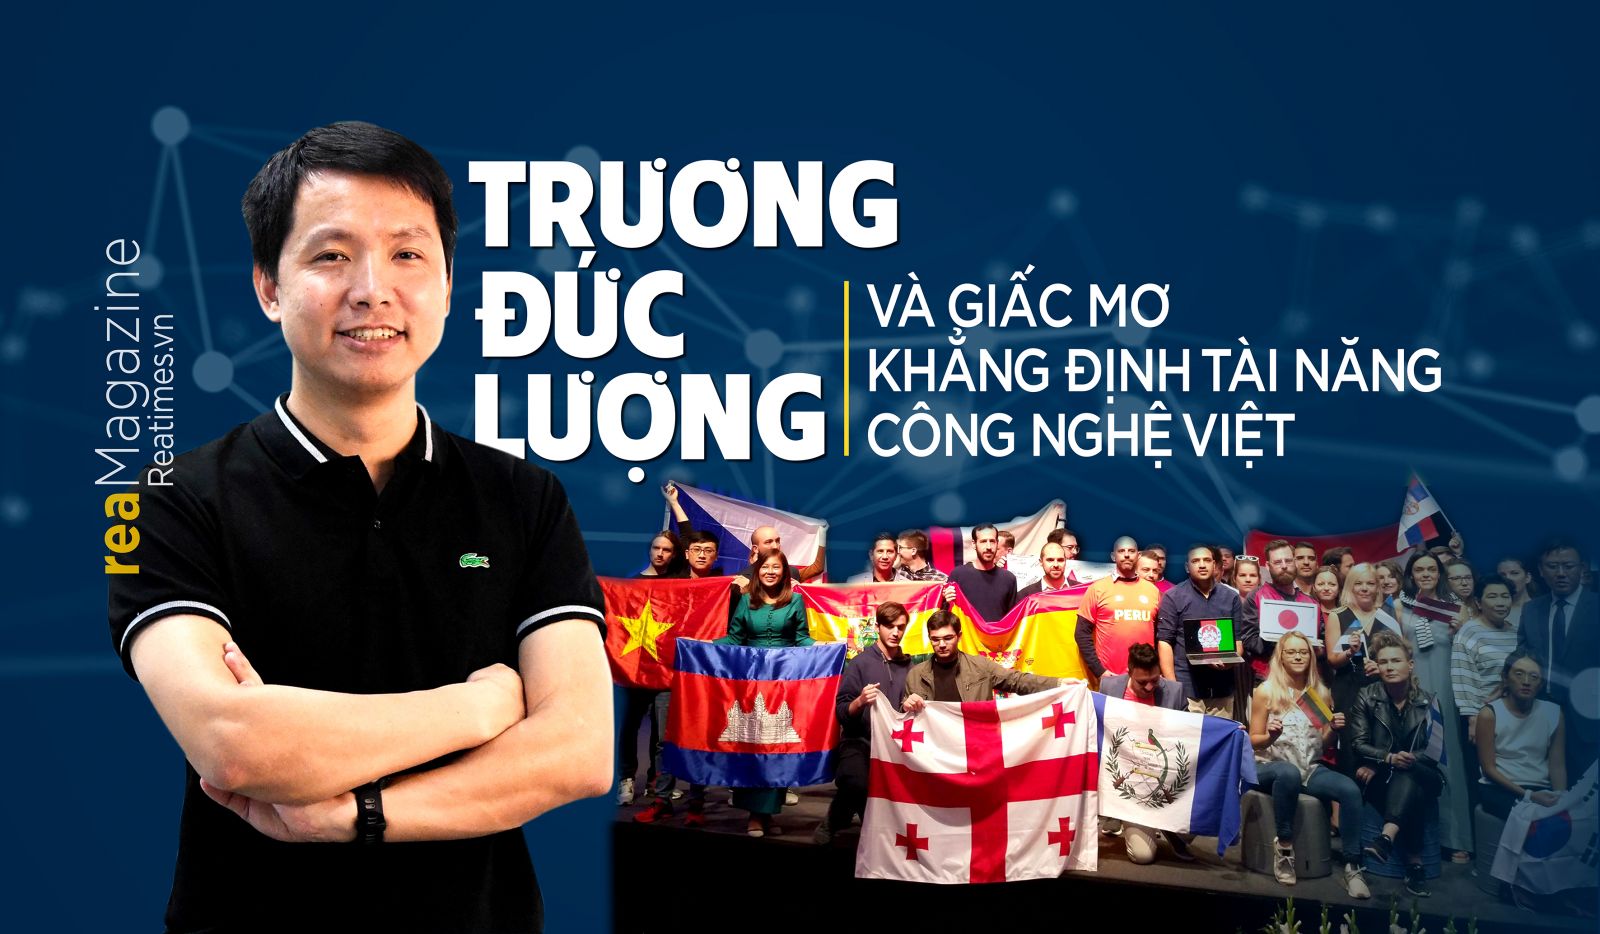 Trương Đức Lượng và giấc mơ khẳng định tài năng công nghệ Việt